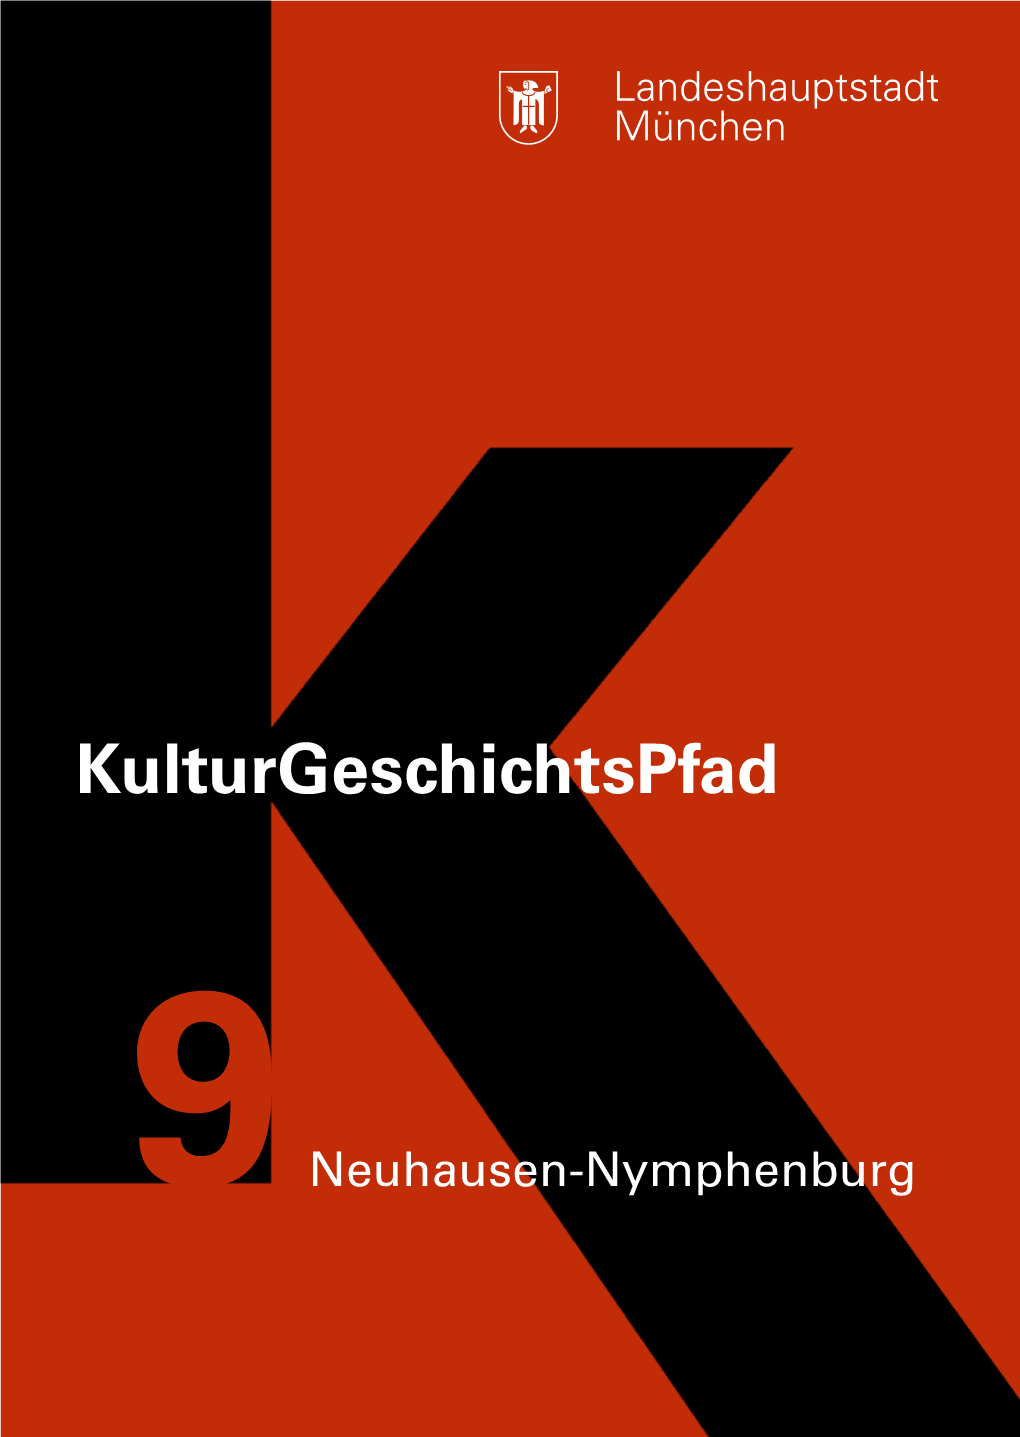 Kulturgeschichtspfad-9-Neuhausen-Nymphenburg.Pdf